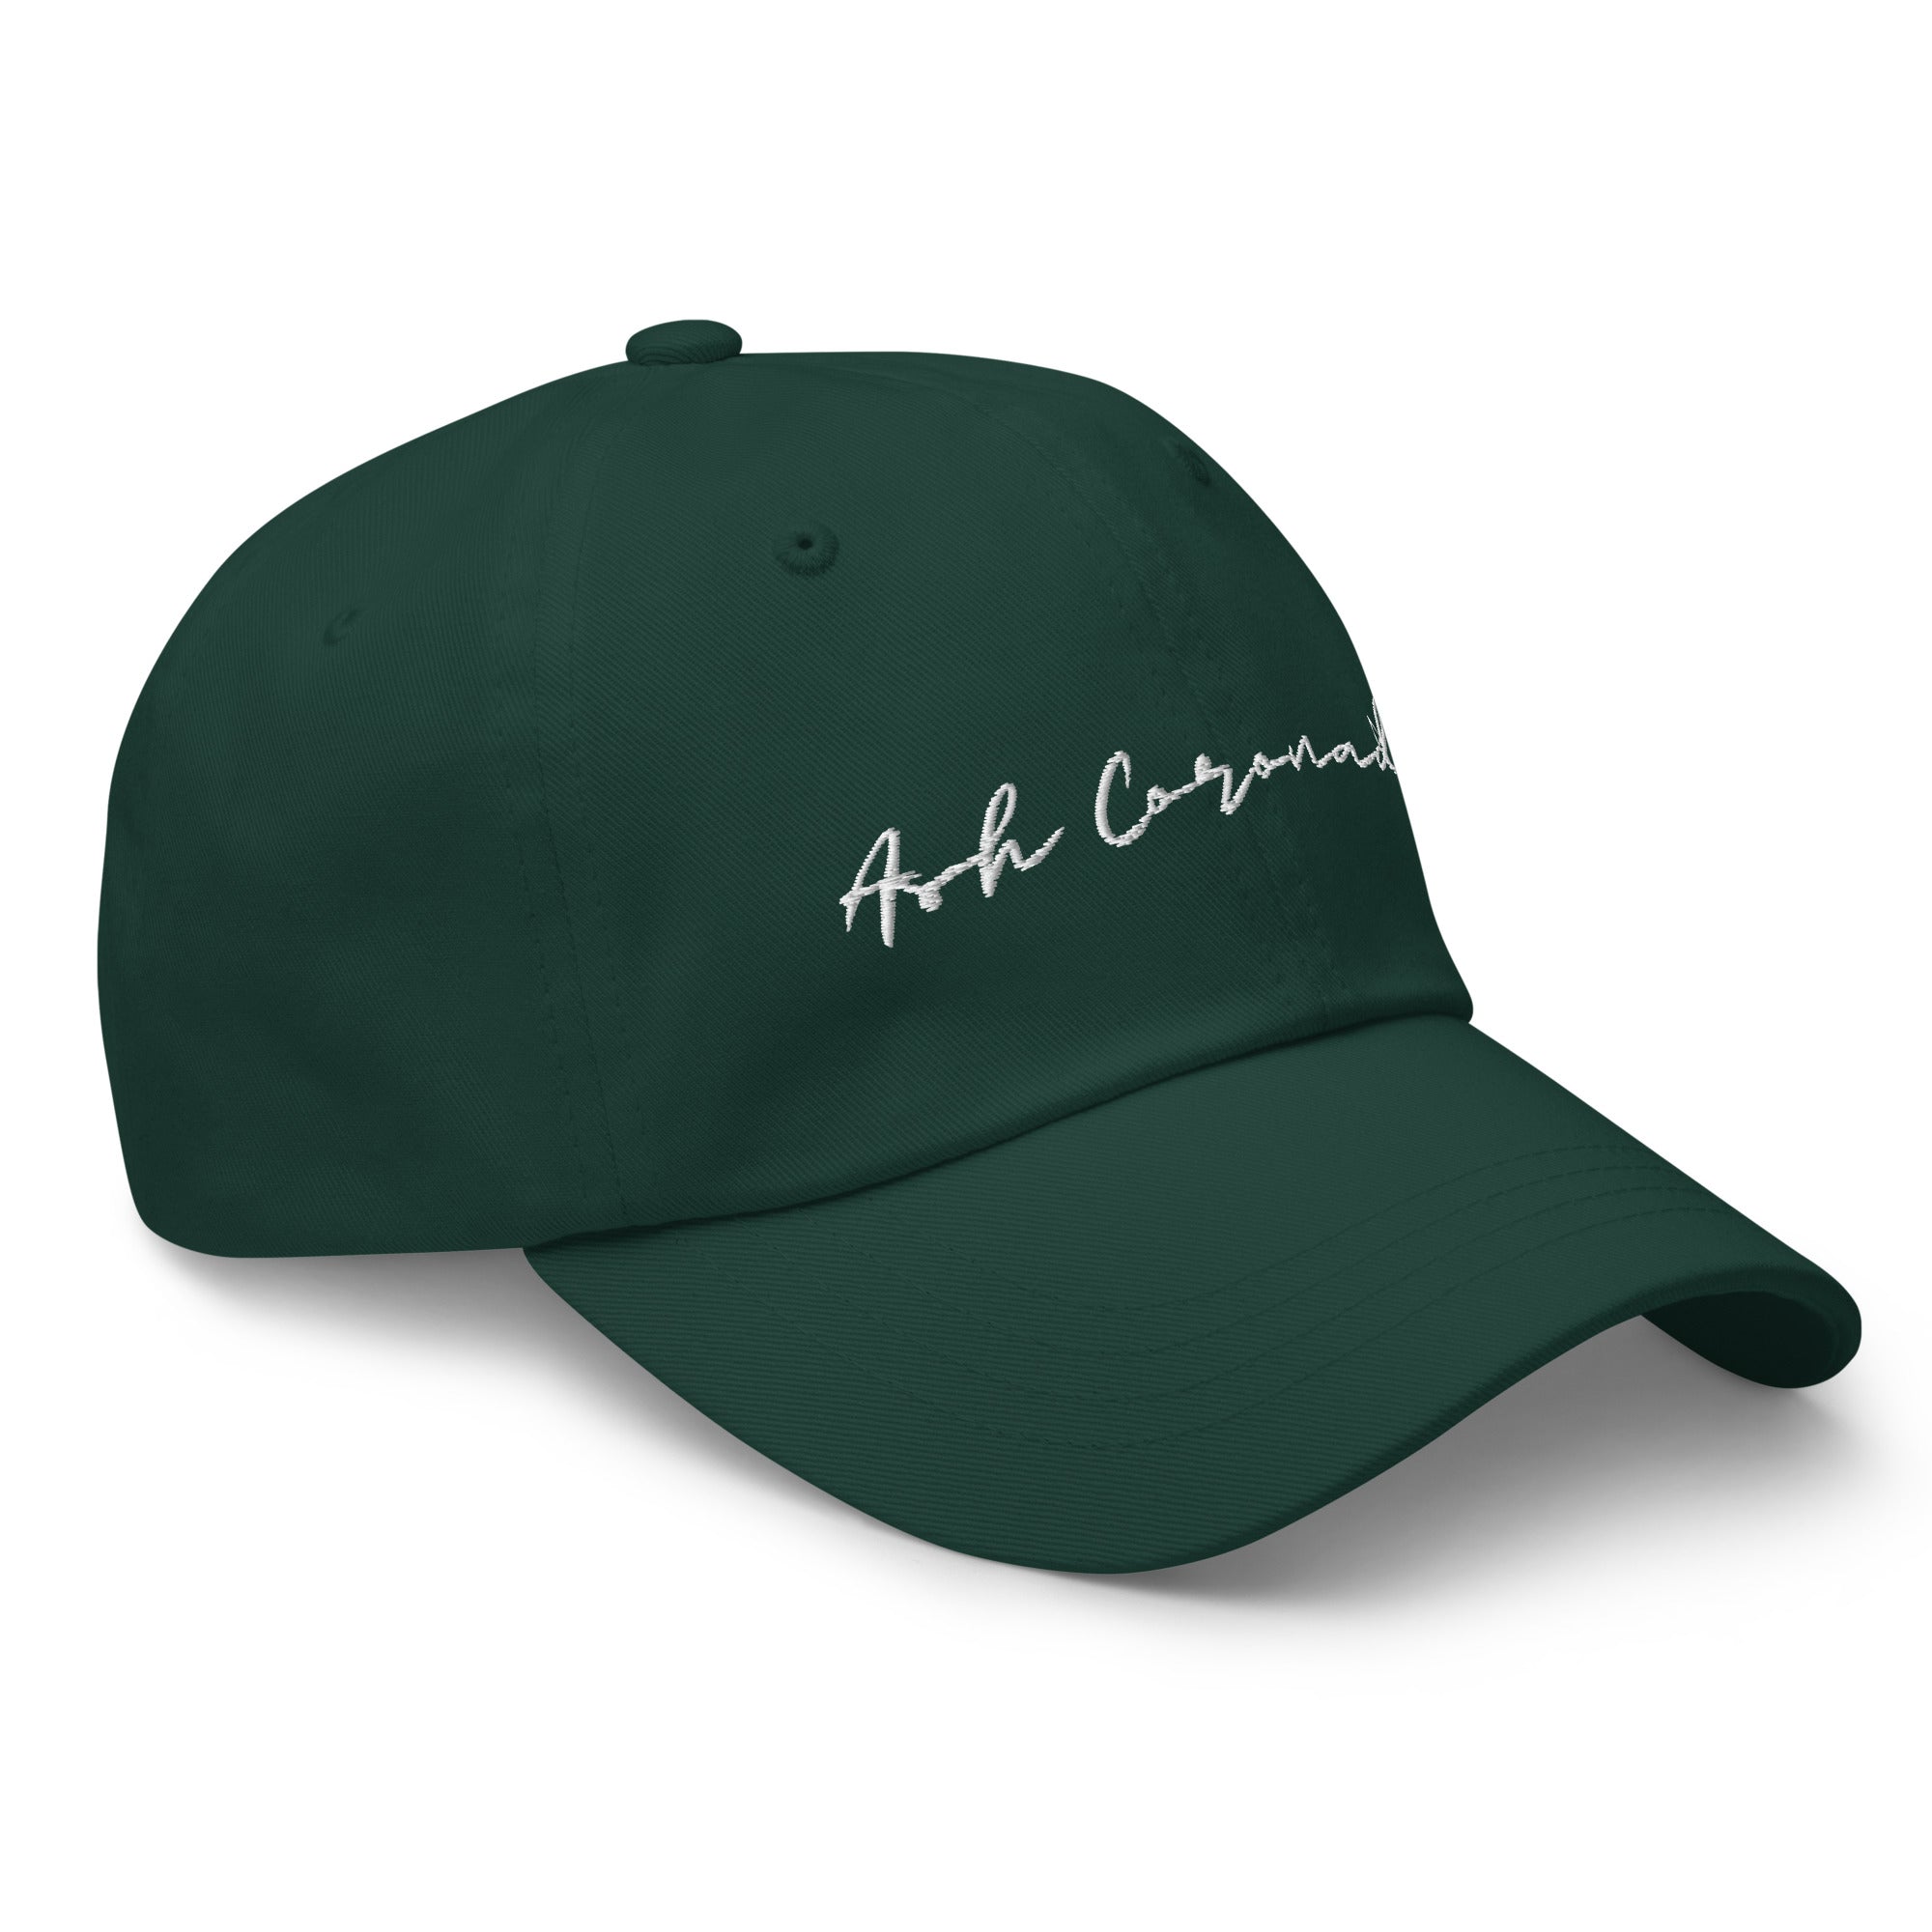 Ash Coronado - Dad hat